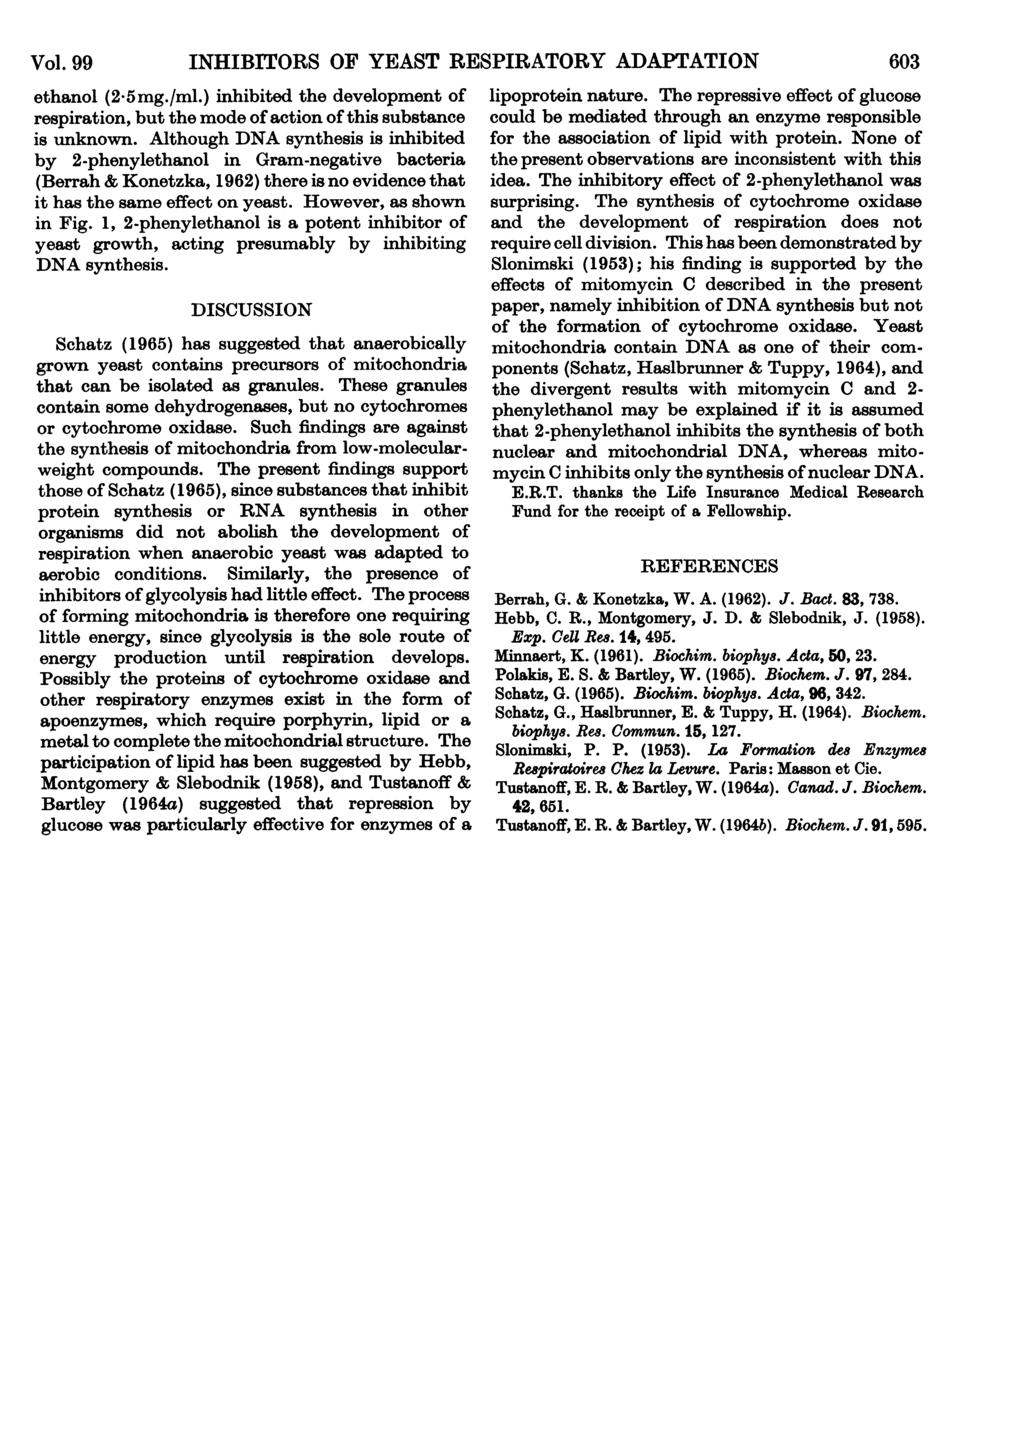 Vol. 99 INHIBITORS OF YEAST RESPIRATORY ADAPTATION 63 ethanol (2.5mg./ml.) inhibited the development of lipoprotein nature.